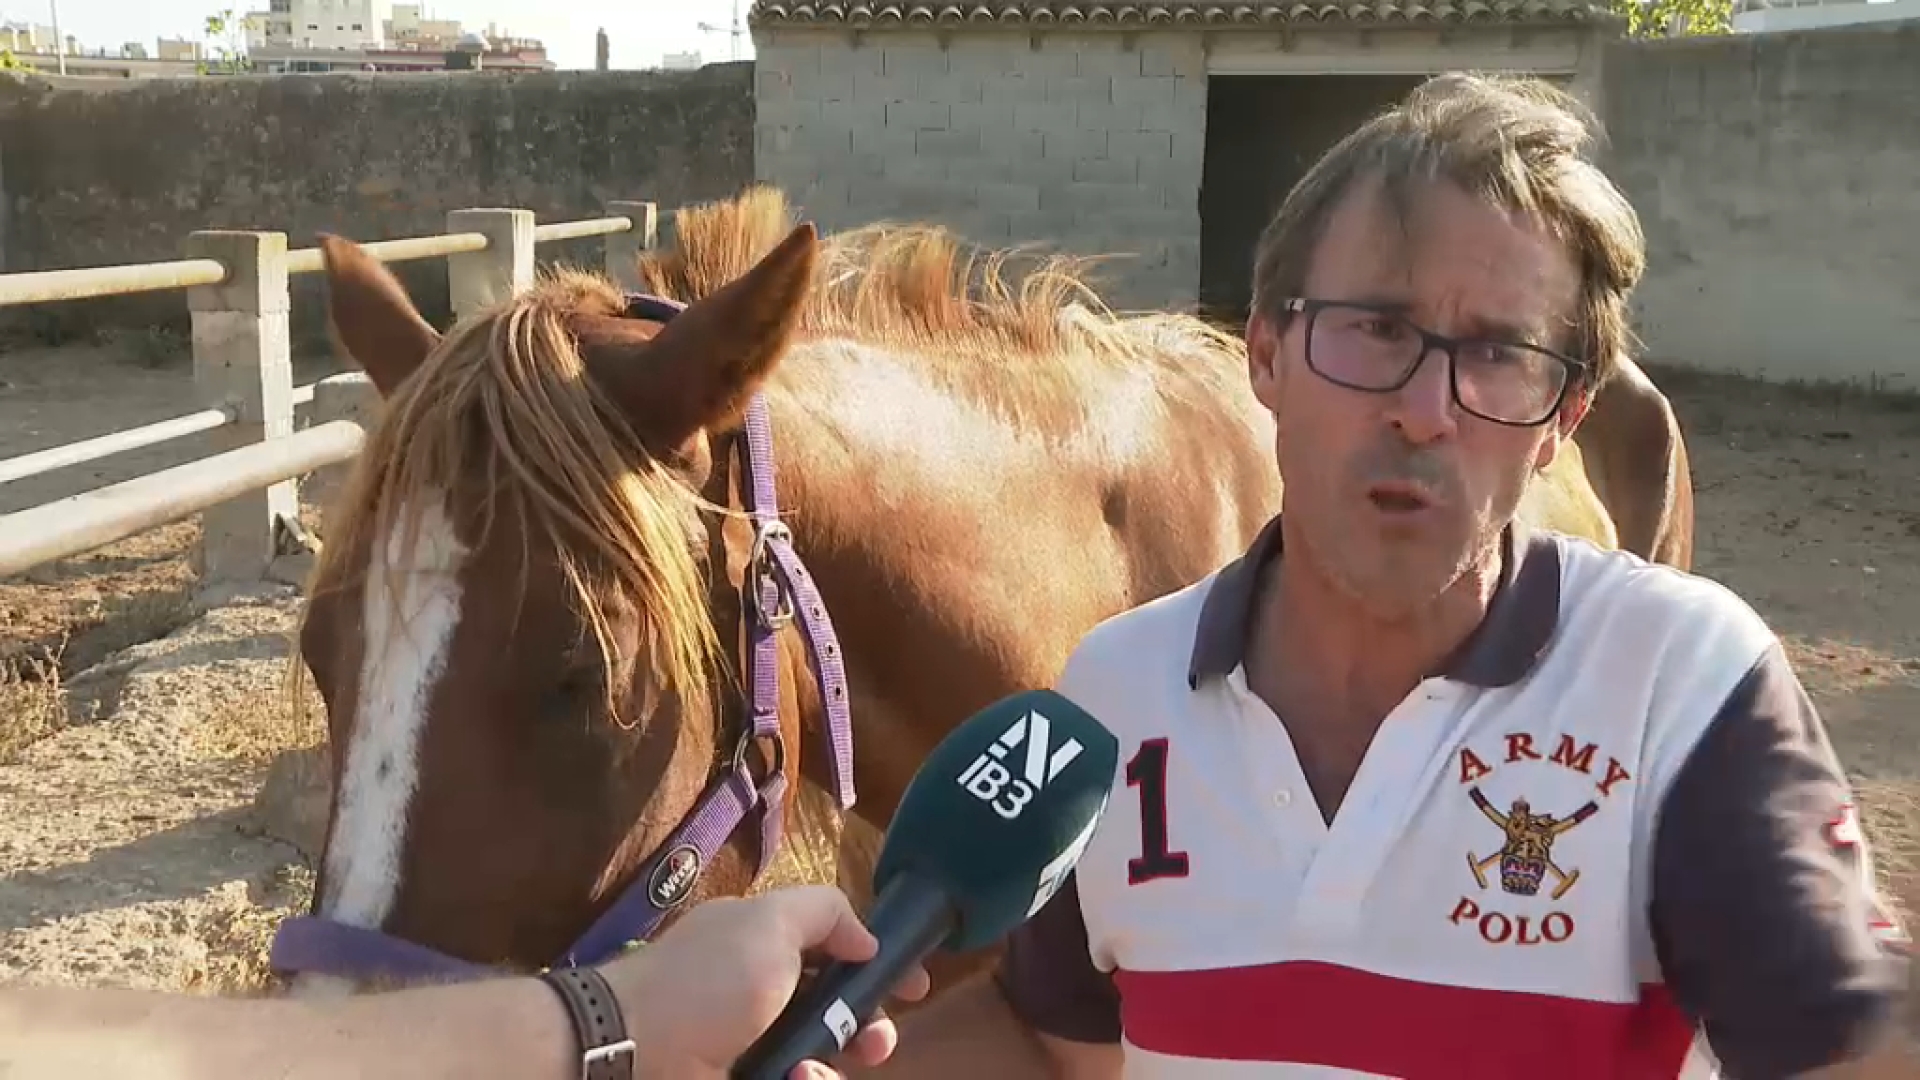 La policia recupera l’egua de competició, valorada en més de 10.000 euros, robada a Palma